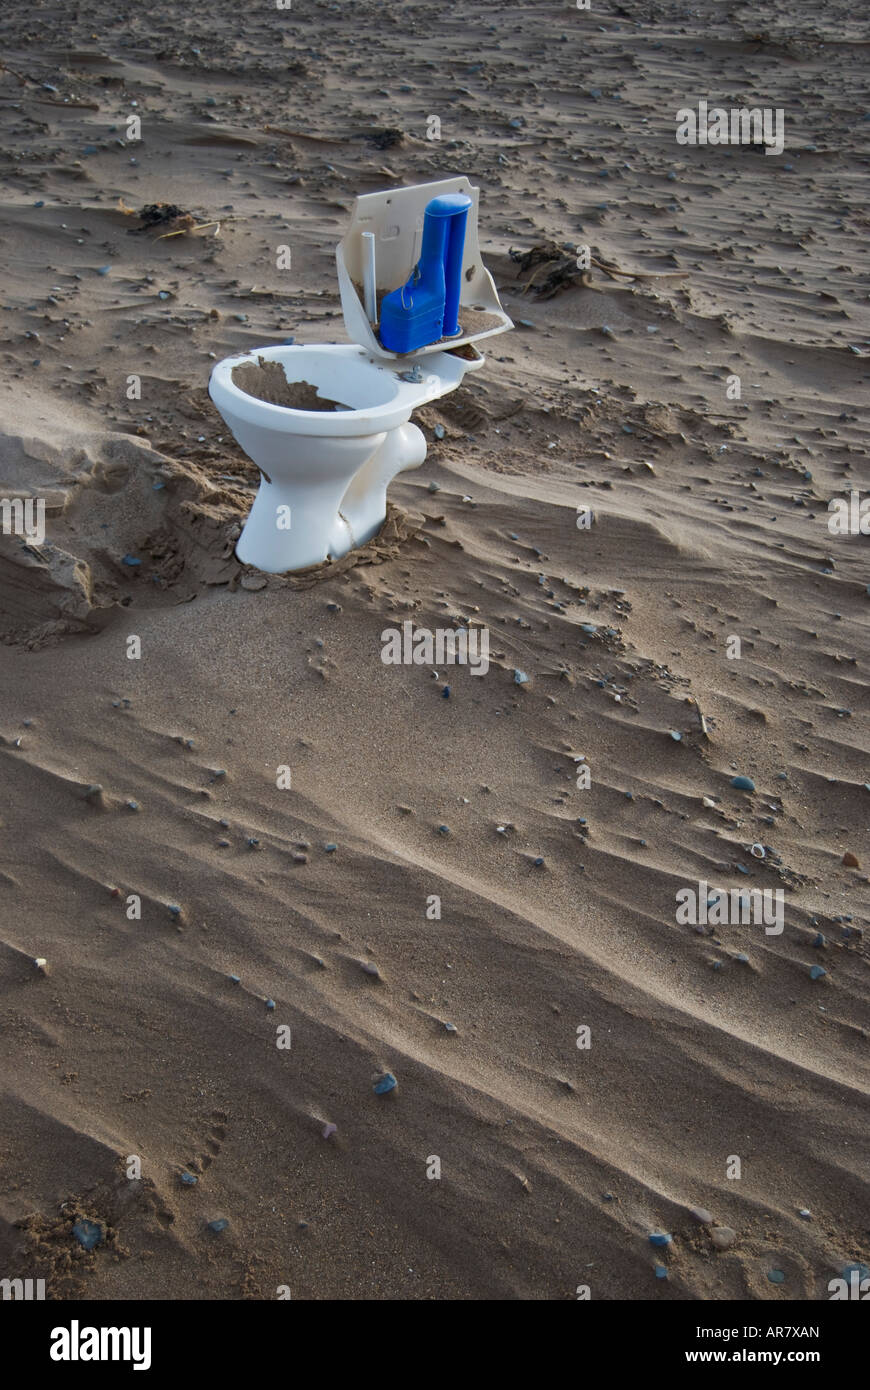 Toilet on the Beach Stock Photo